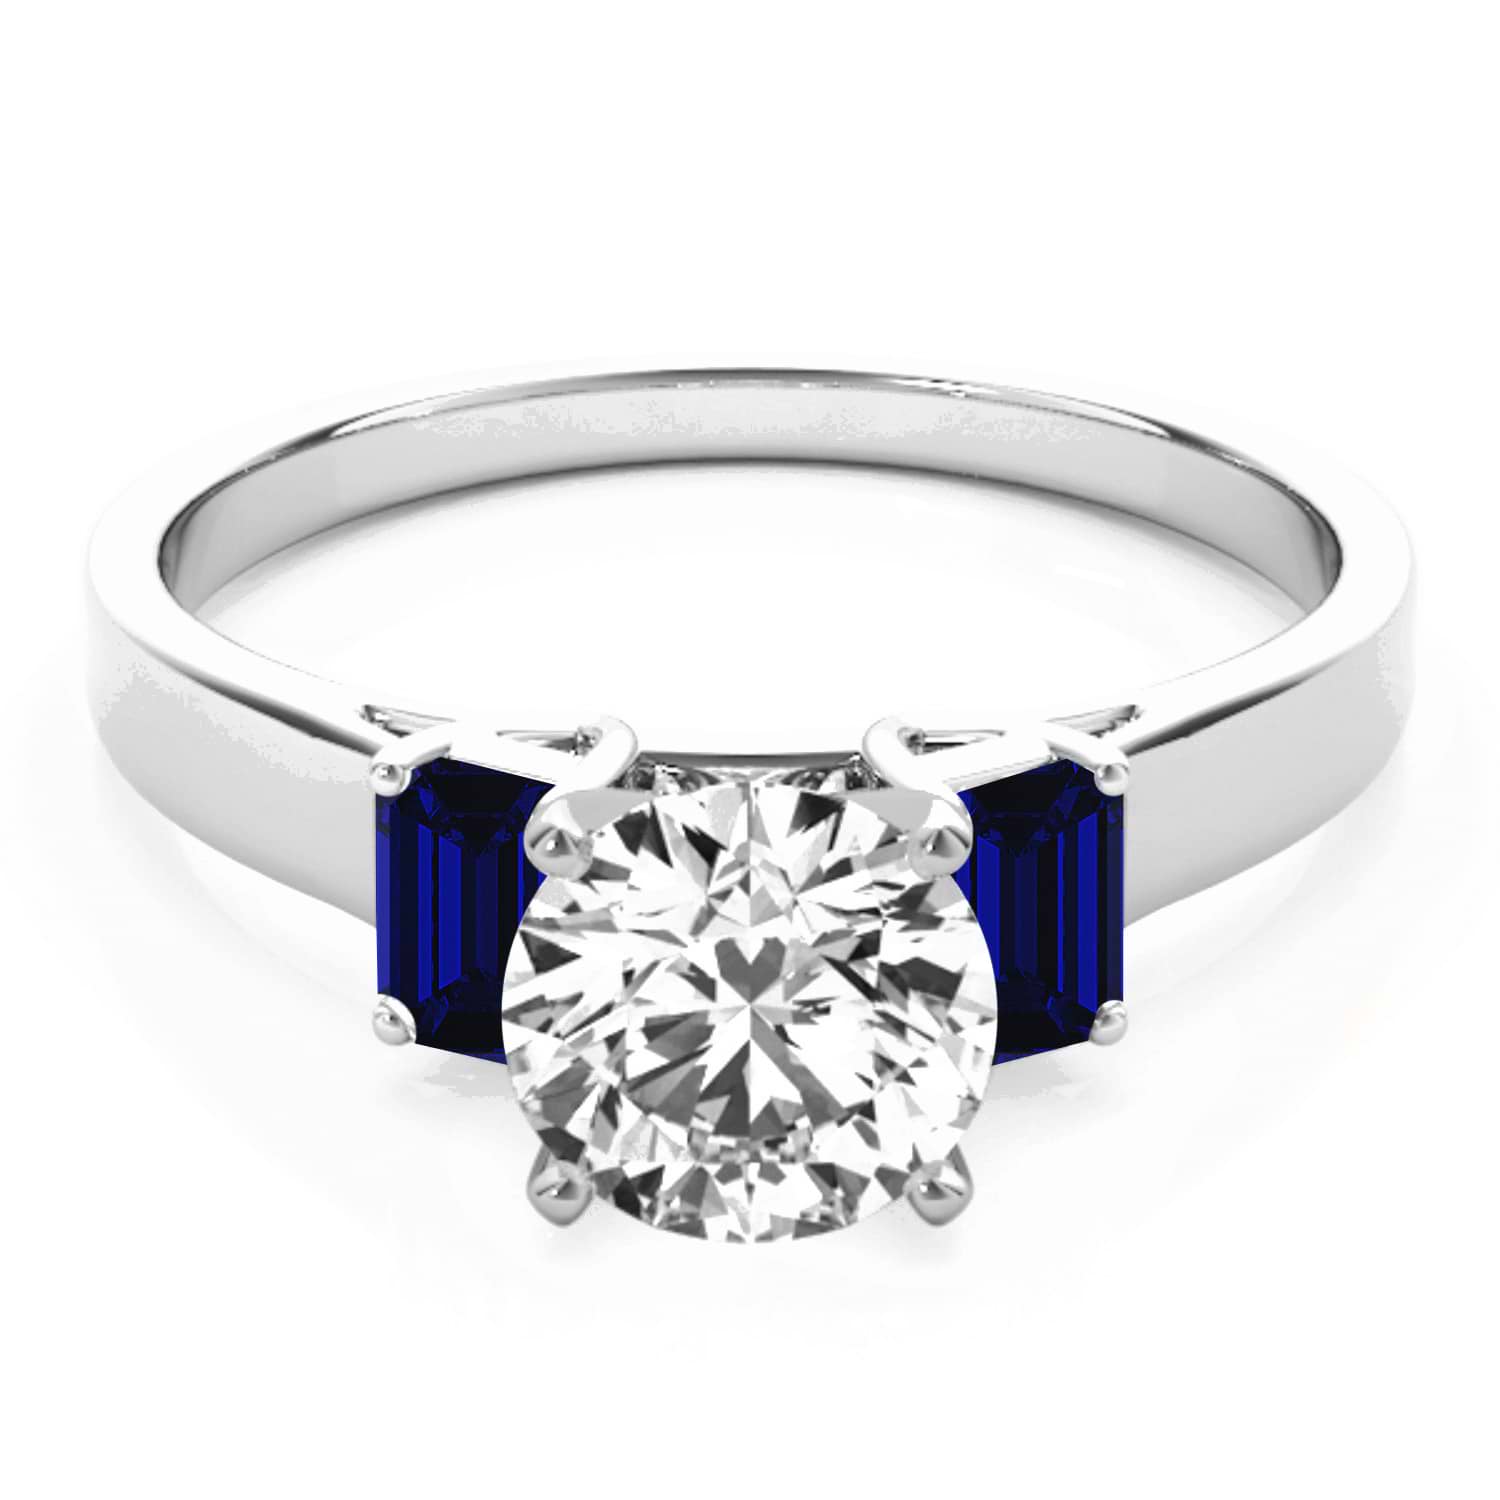 Trio Emerald Cut Blue Sapphire Engagement Ring Platinum (0.30ct)